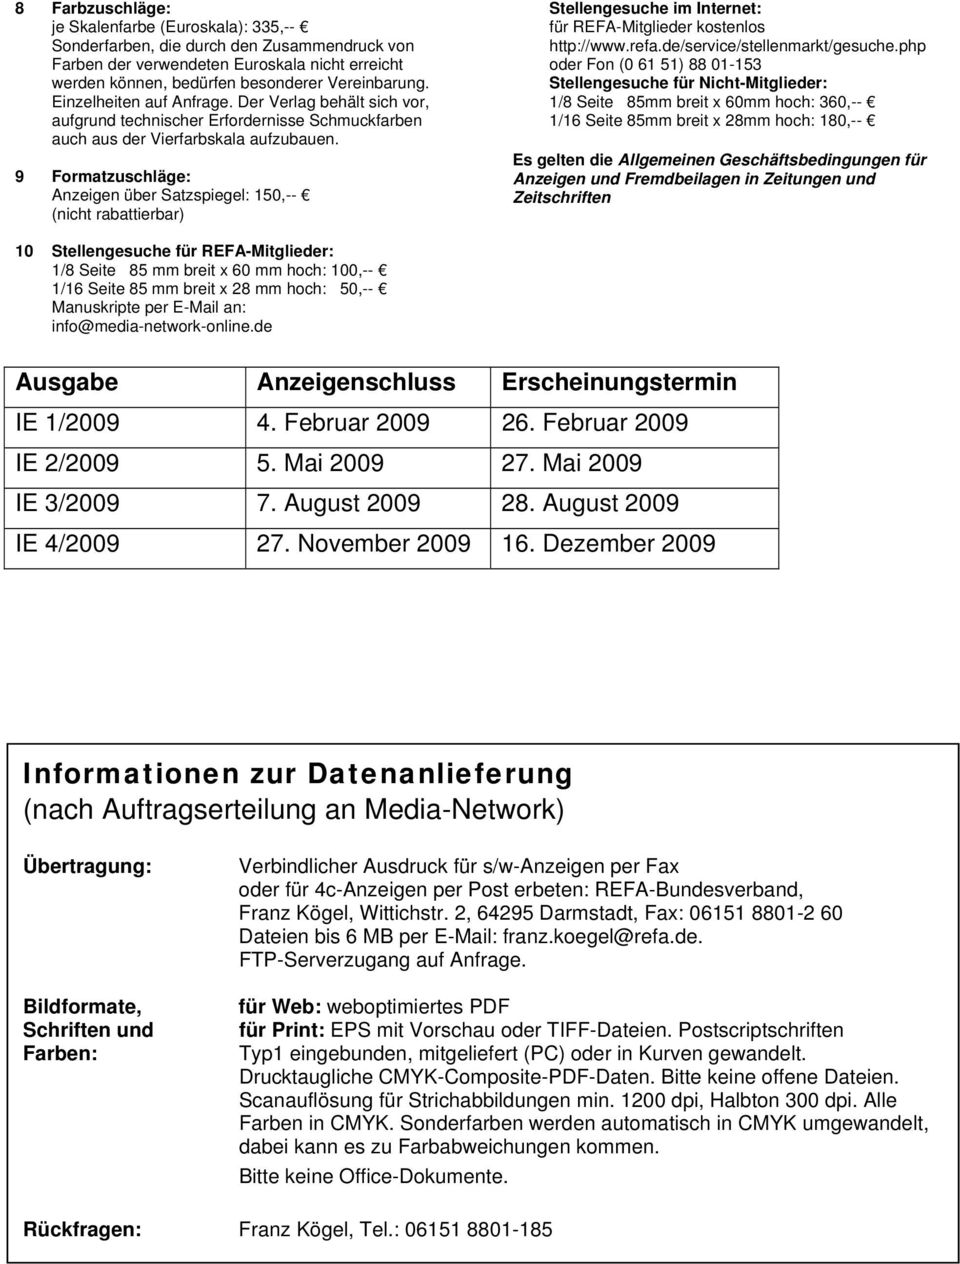 9 Formatzuschläge: Anzeigen über Satzspiegel: 150,-- (nicht rabattierbar) Stellengesuche im Internet: für REFA-Mitglieder kostenlos http://www.refa.de/service/stellenmarkt/gesuche.